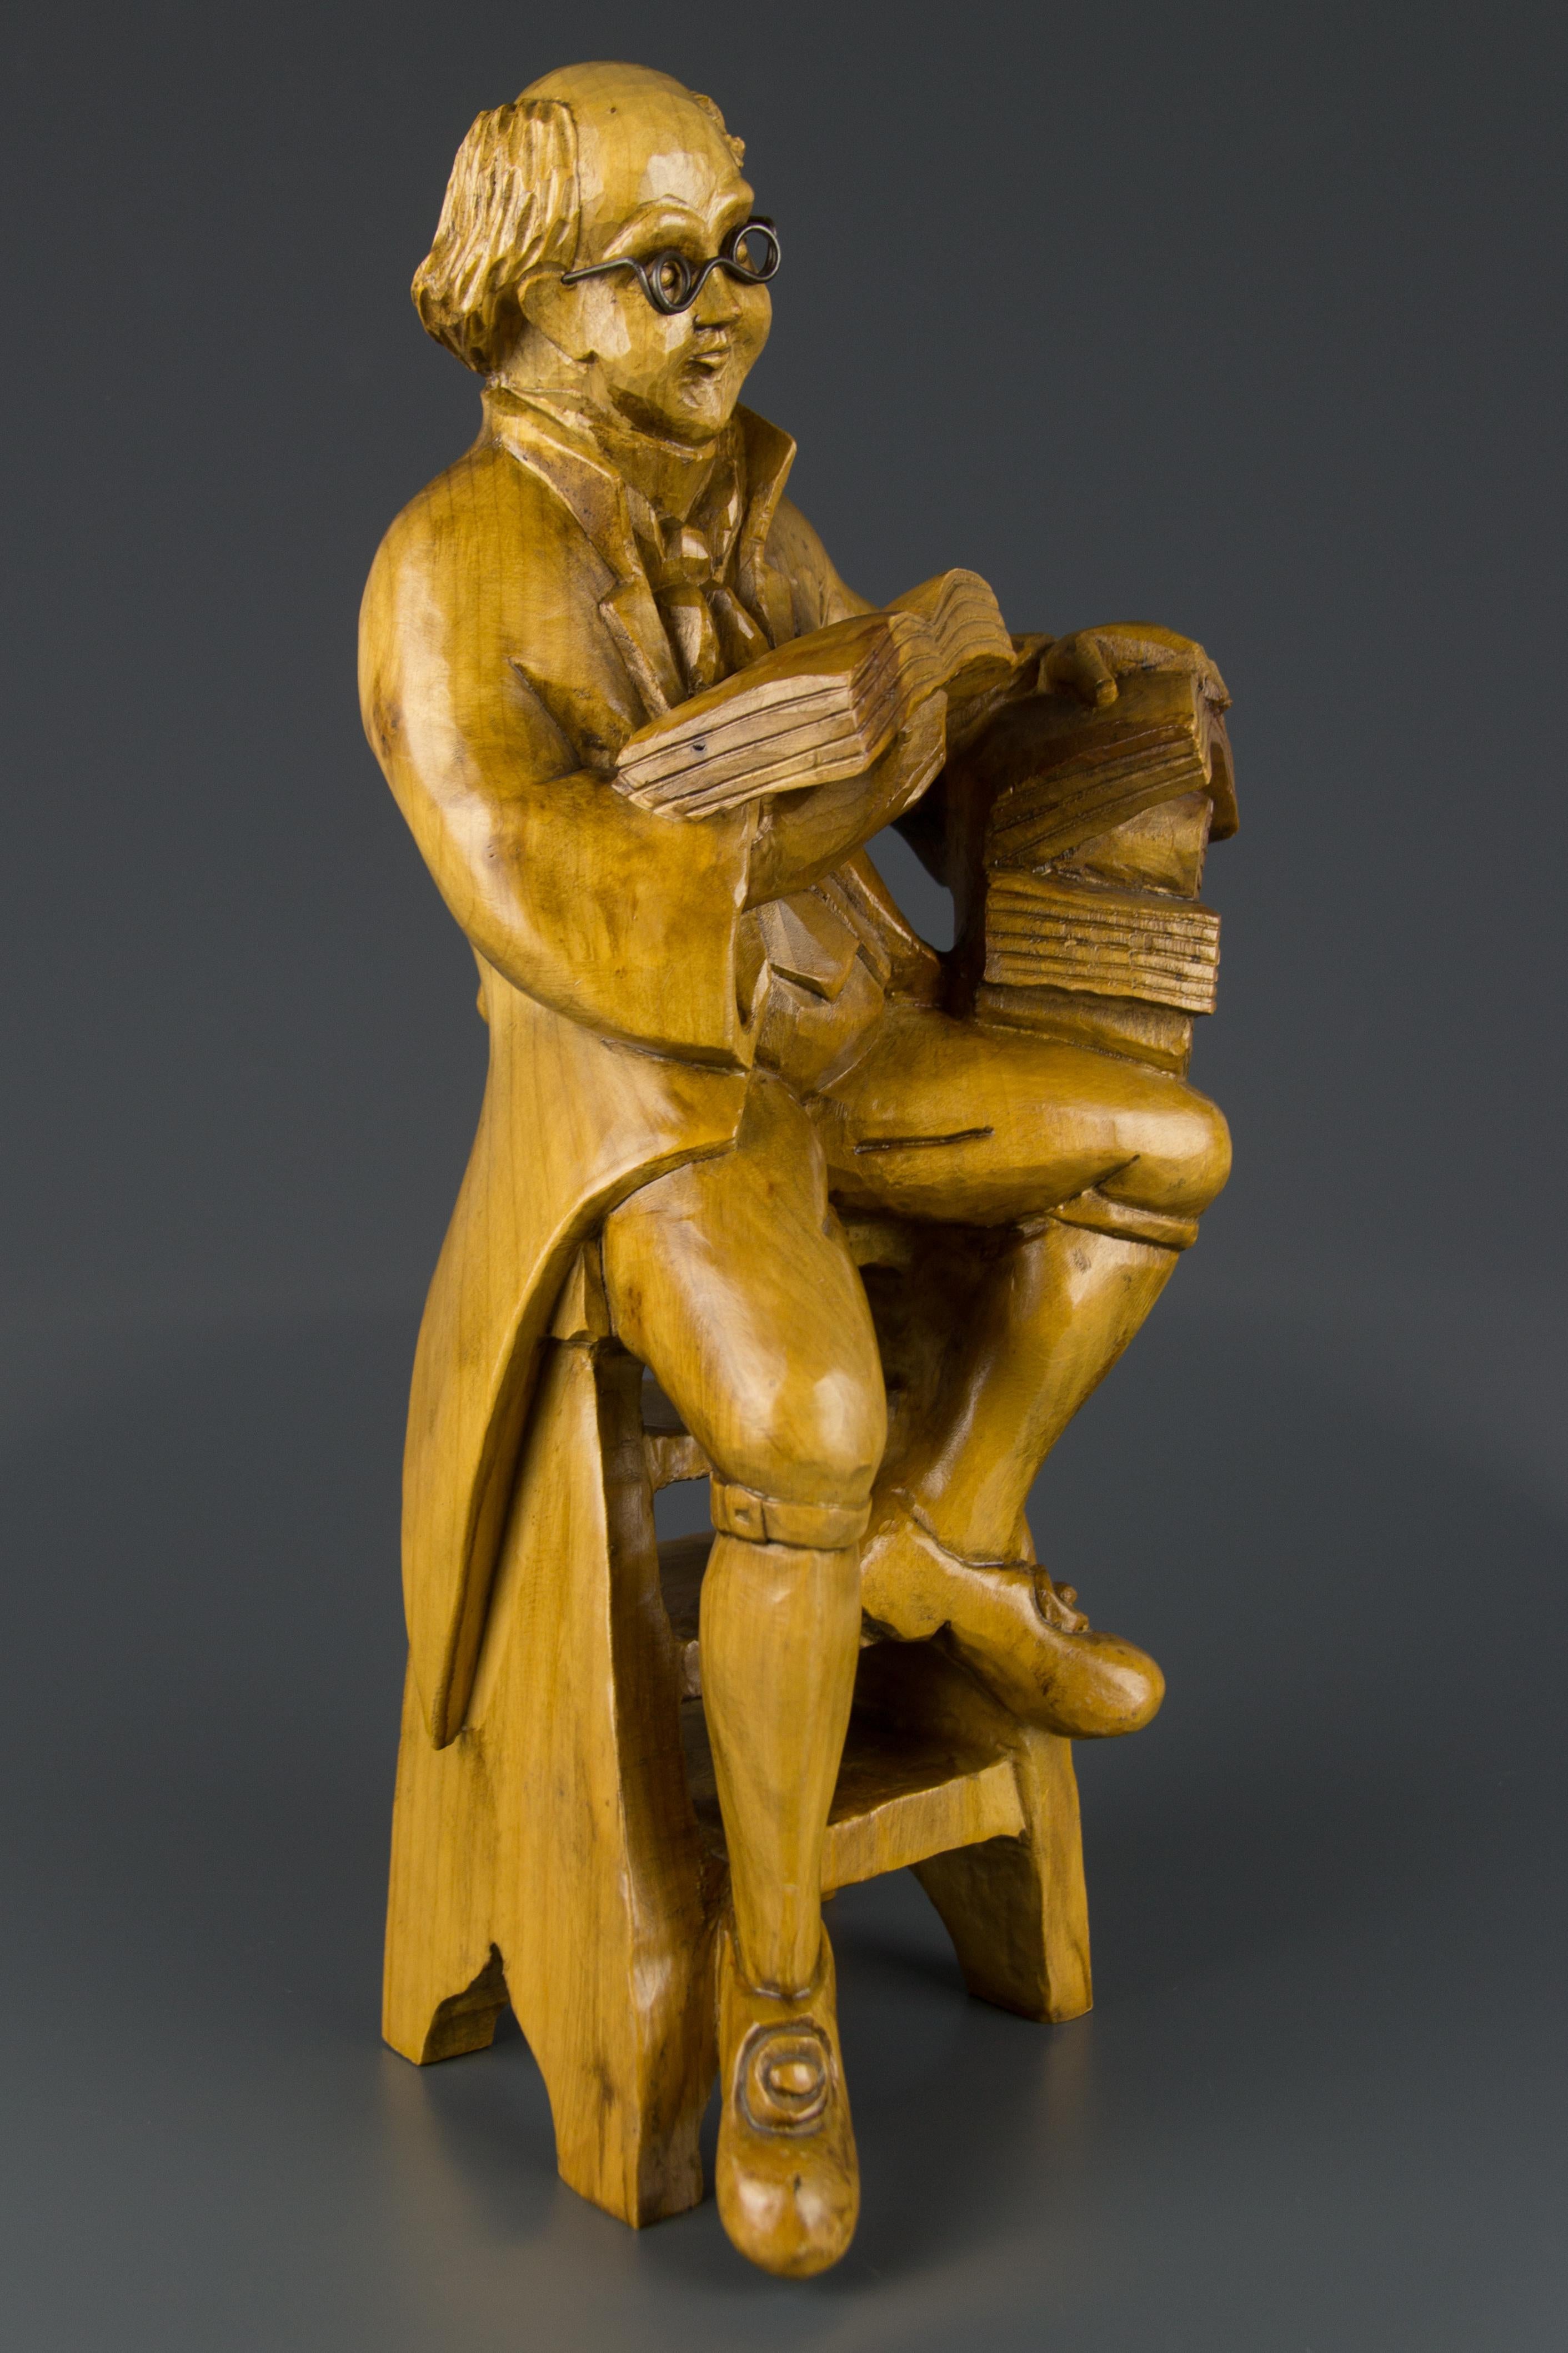 Une sculpture en bois magistralement sculptée représentant un professeur avec des livres assis sur une chaise. Magnifiquement réalisée dans les moindres détails, cette adorable sculpture décorera n'importe quelle pièce - bureau, bibliothèque,